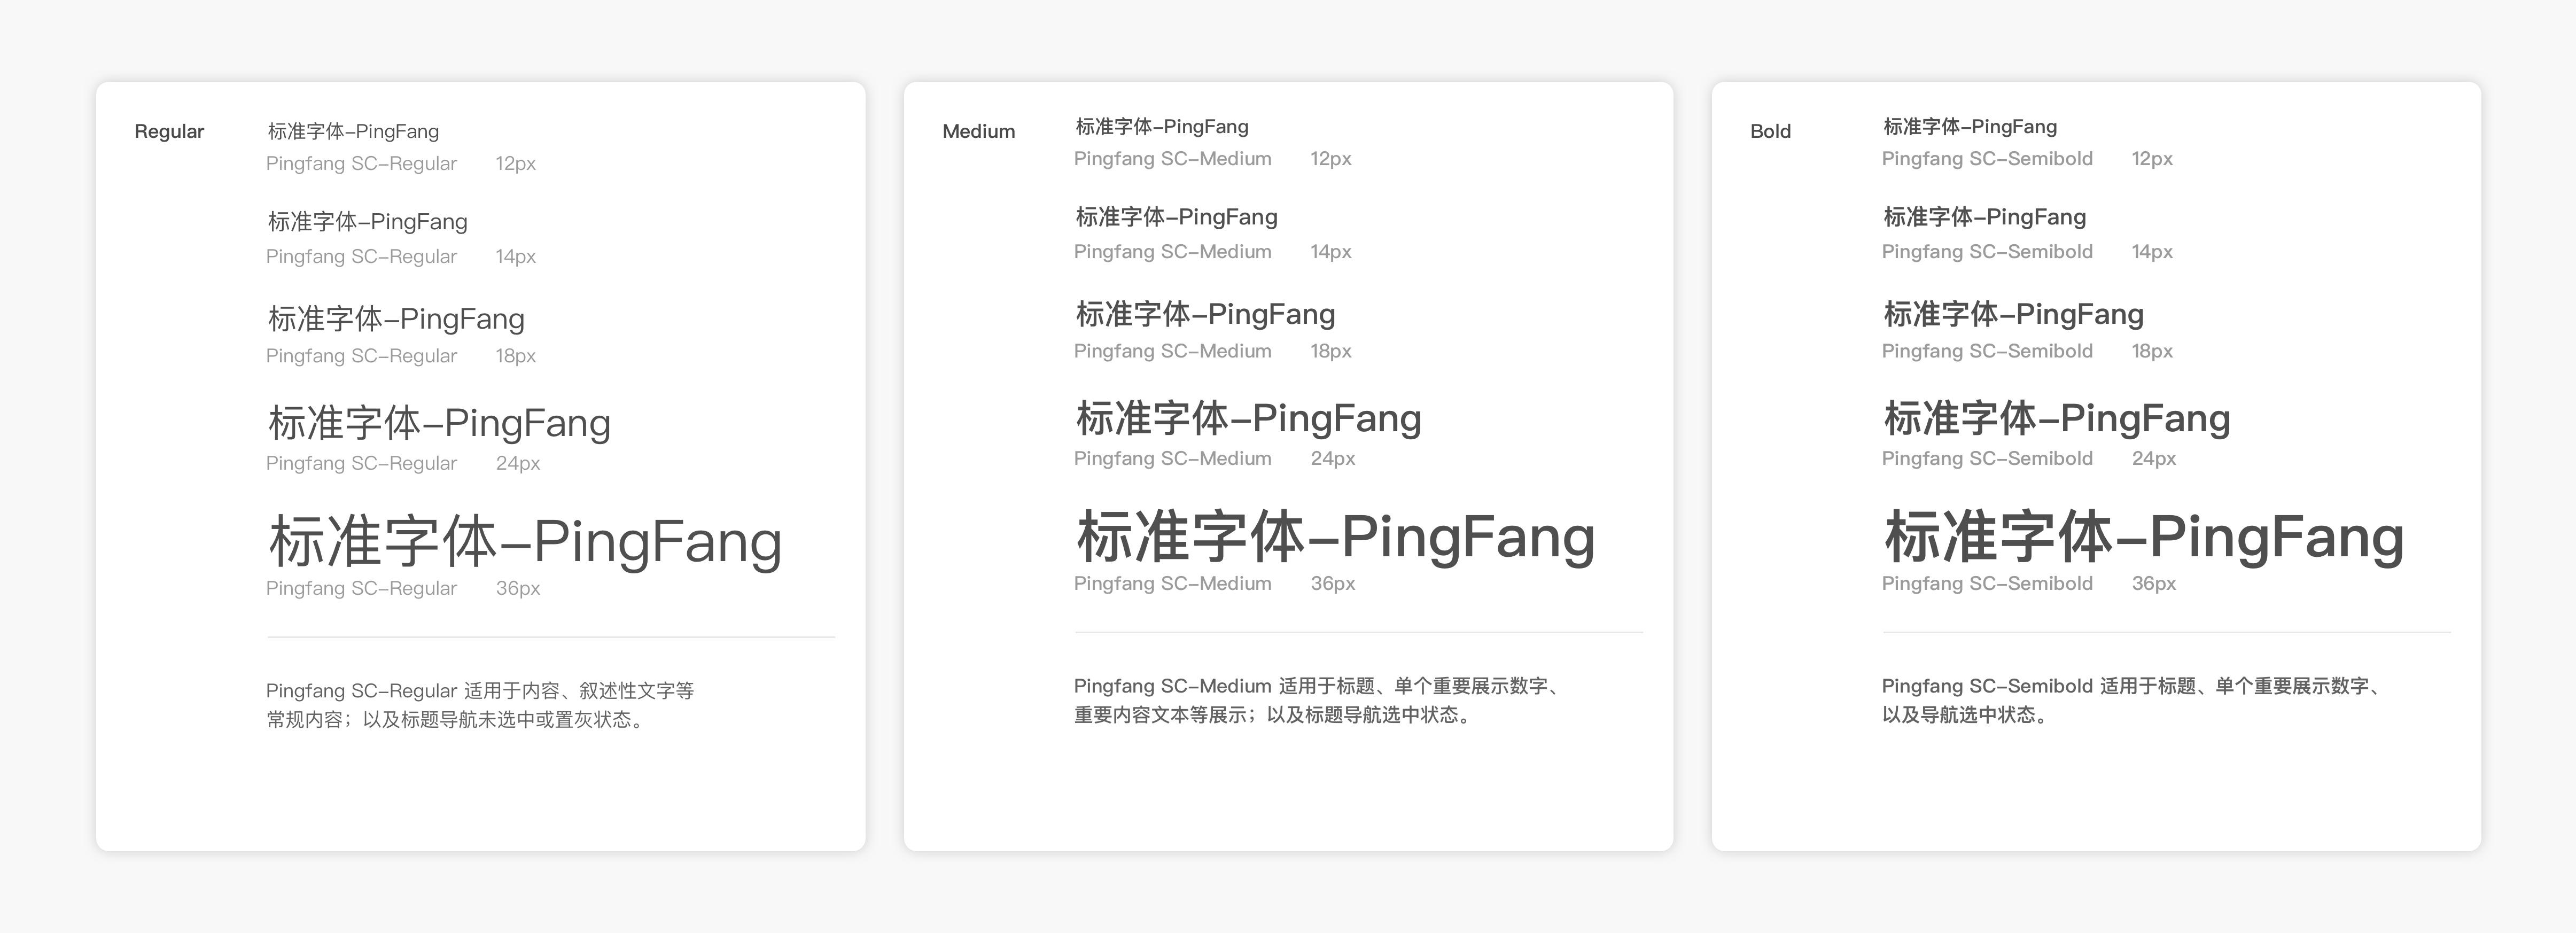 中文网页文字排版有哪些实用的技巧?